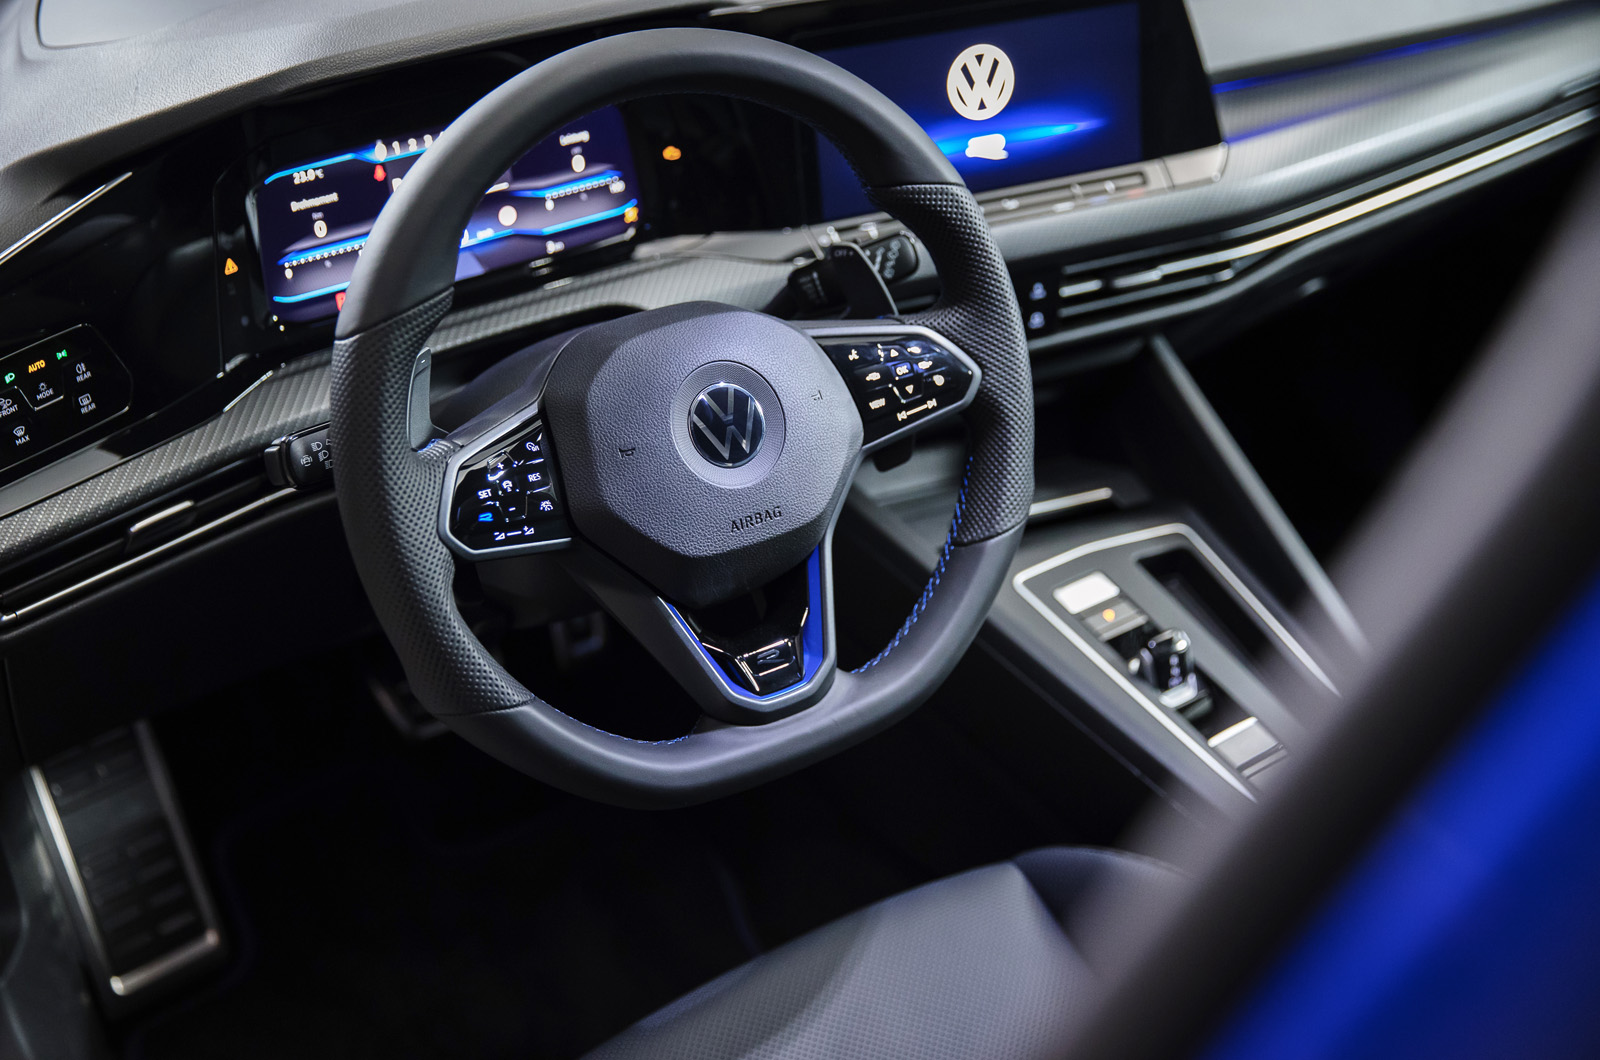 New Volkswagen Golf R brings 316bhp, costs £39,270